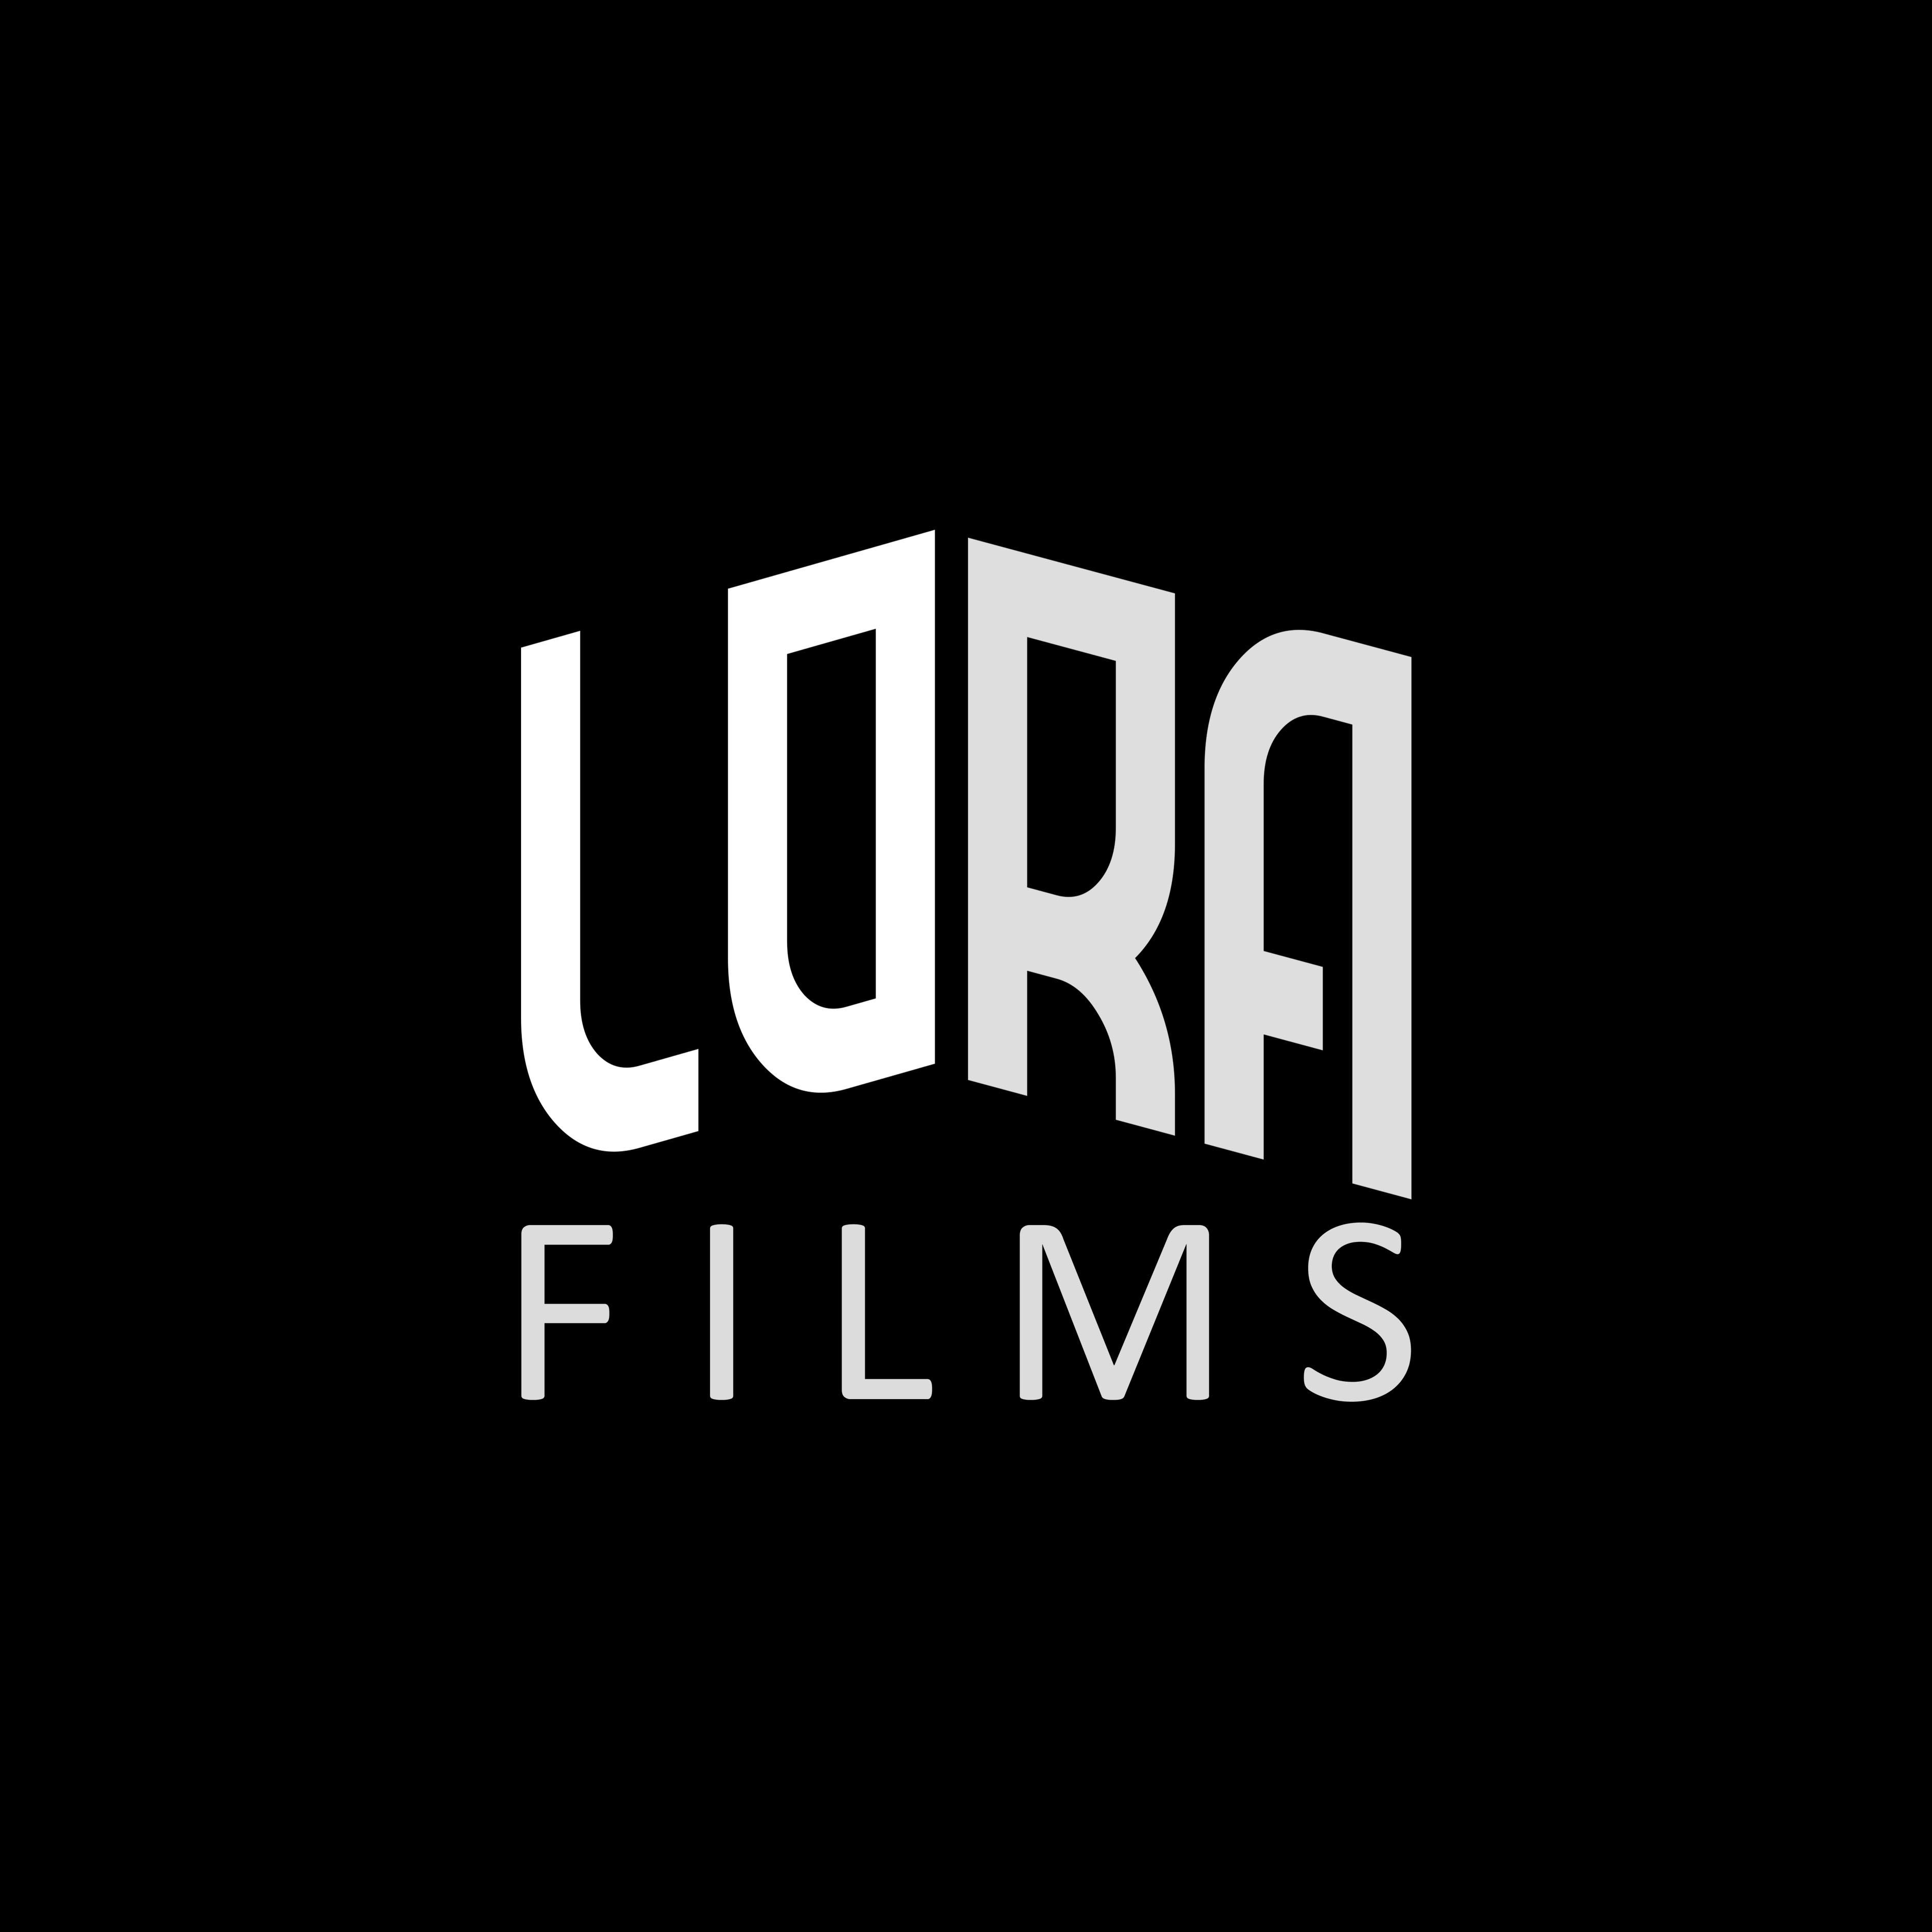 Lora Films